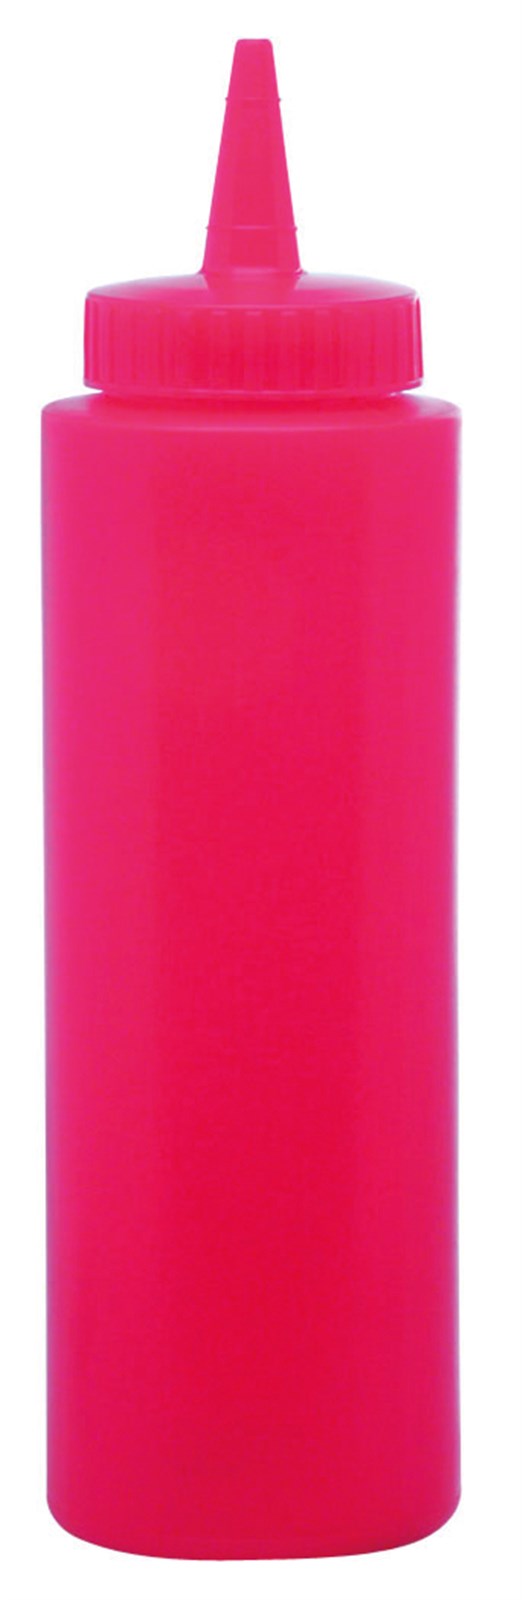 Saucen Dispenser Rot 0.354lt - KAQTU Design